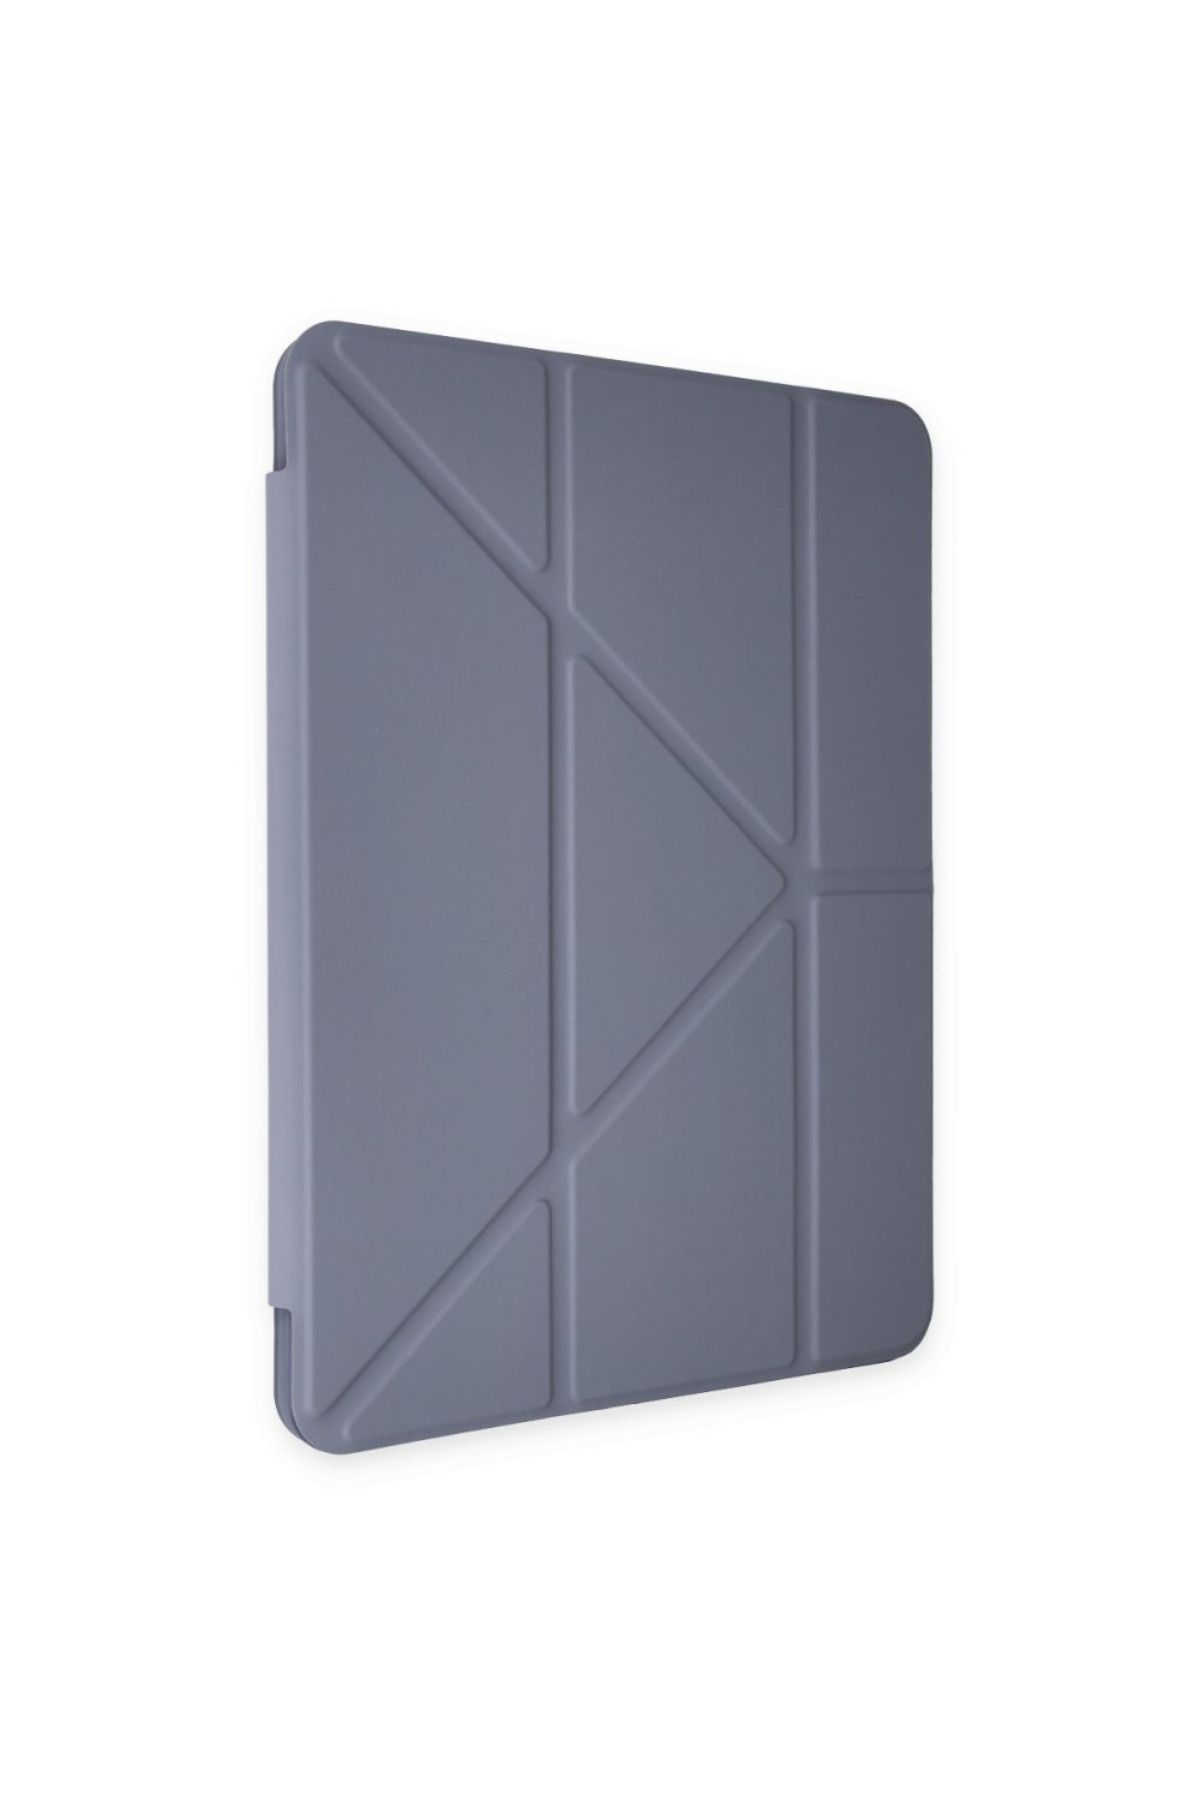 Fuchsia Apple Ipad 10.2 (8.NESİL) Uyumlu Kalemlikli Premium Standlı Katlanabilir Uyku Modlu Tablet Kılıfı